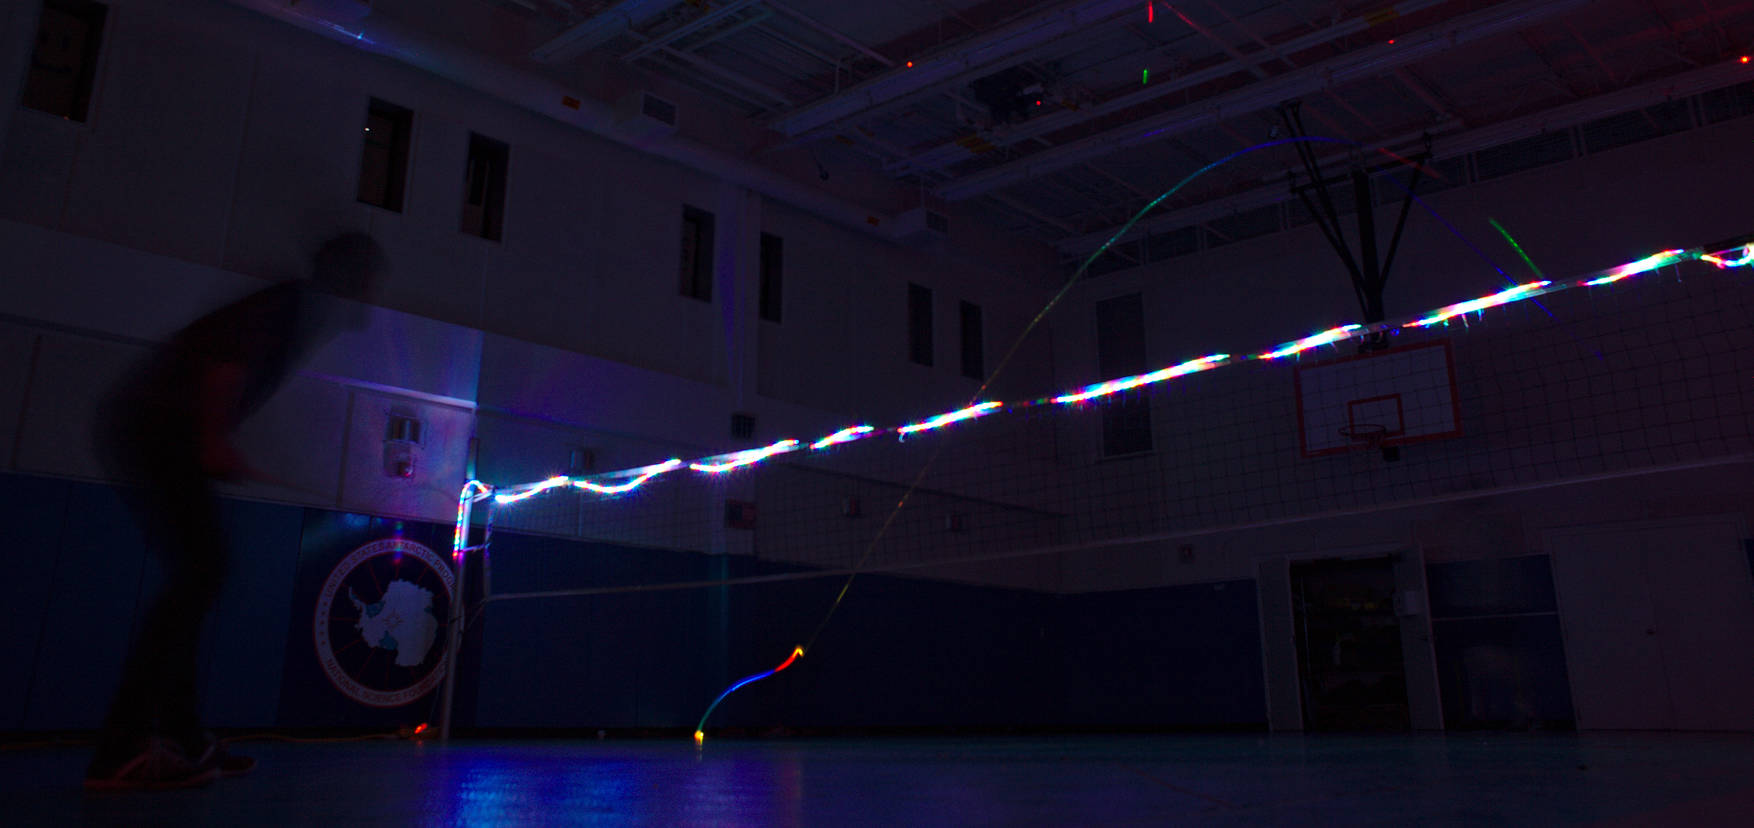 LED badminton in the dark